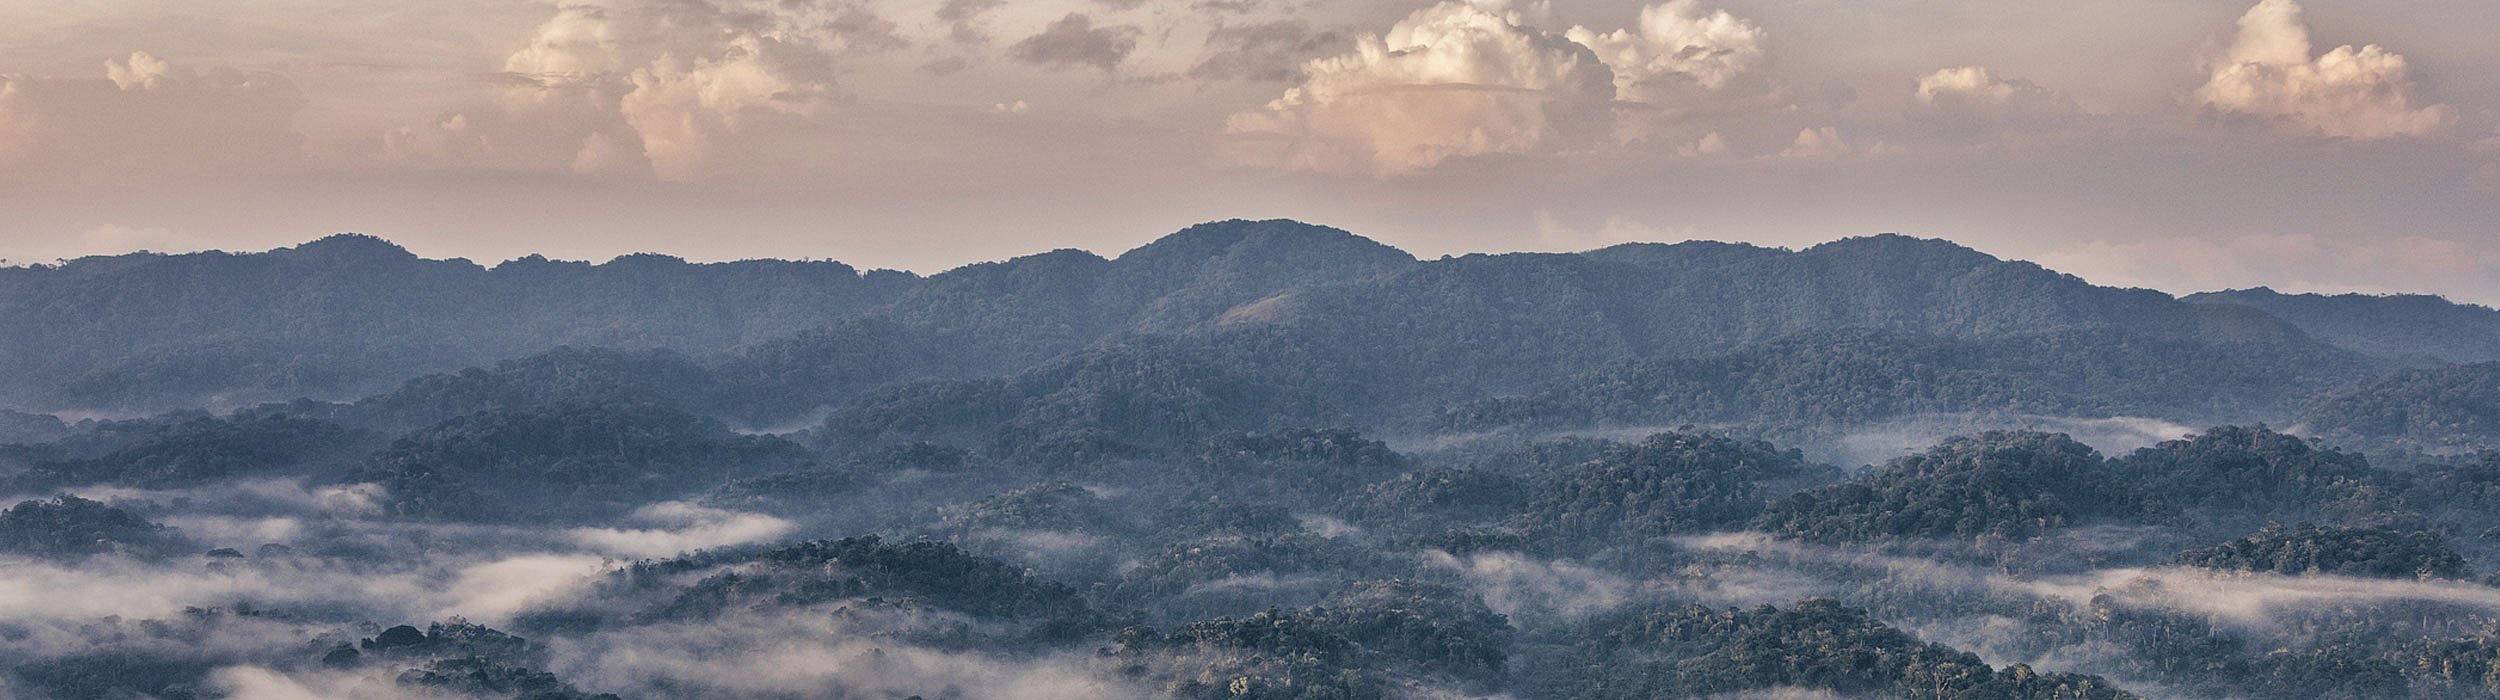 Morning mist in the rainforest of Rwanda